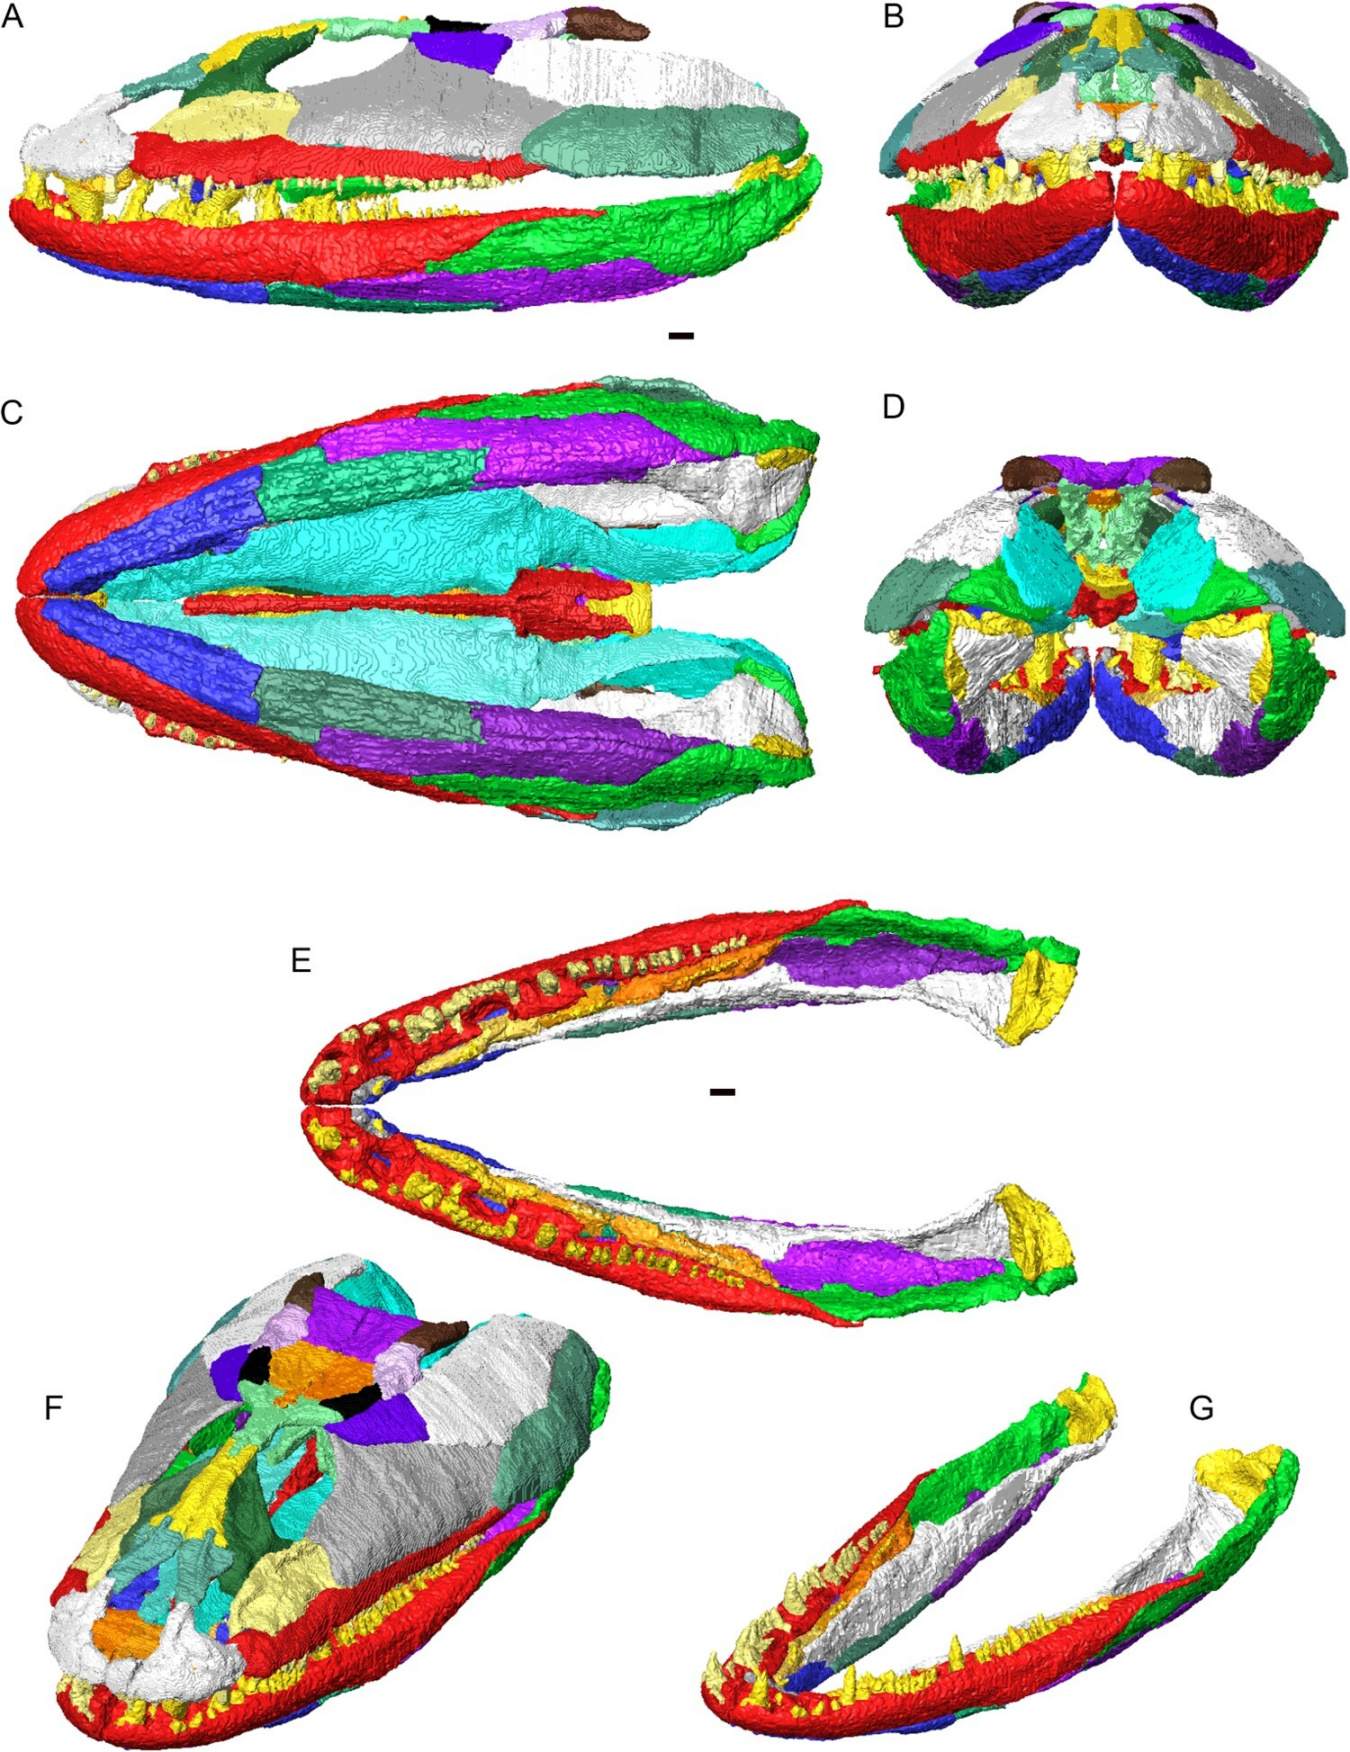 بيان ۾ Crassigyrinus scoticus جي ڪرينيم ۽ هيٺين جبڙن جي 3D بحالي. انفرادي هڏا مختلف رنگن ۾ ڏيکاريل آهن. الف، کاٻي پاسي وارو ڏيک؛ ب، اڳيون نظارو؛ سي، ventral ڏيک؛ ڊي، پوئين منظر؛ اي، هيٺيون جبل (ڪو به ڪرينيم نه) ڊورسل ڏيک ۾؛ F, cranium ۽ هيٺين جبڑے dorsolateral oblique ڏيک ۾؛ G، ڊورسولٽرل اوبليڪ ڏيک ۾ هيٺيون جبل بيان ڪيل.